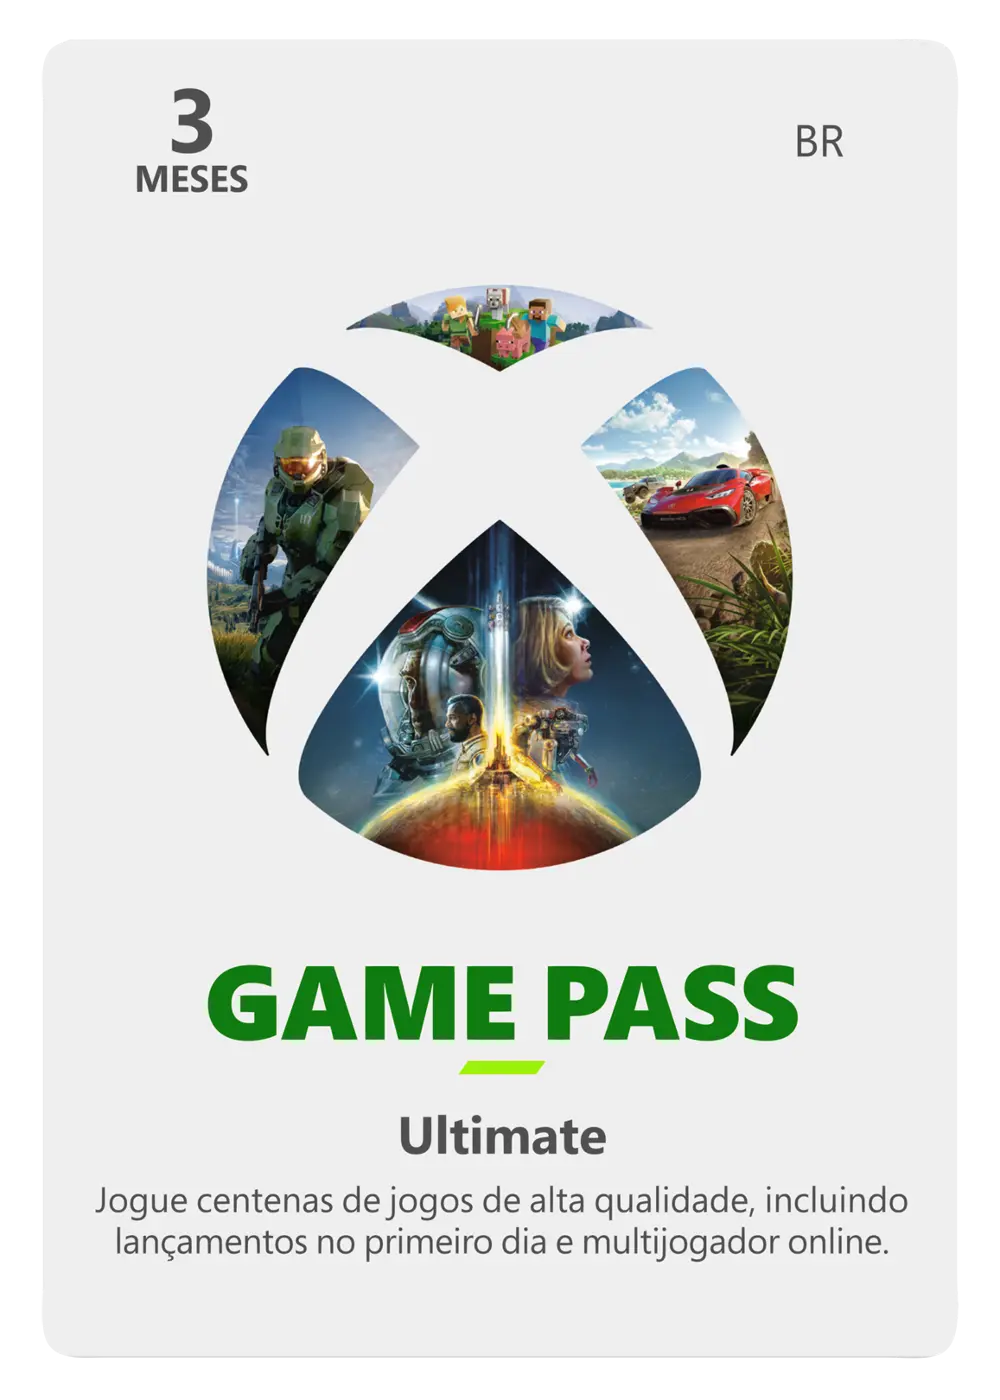 EA Sports FC 24 traz muitos benefícios doXbox Game Pass, incluindo